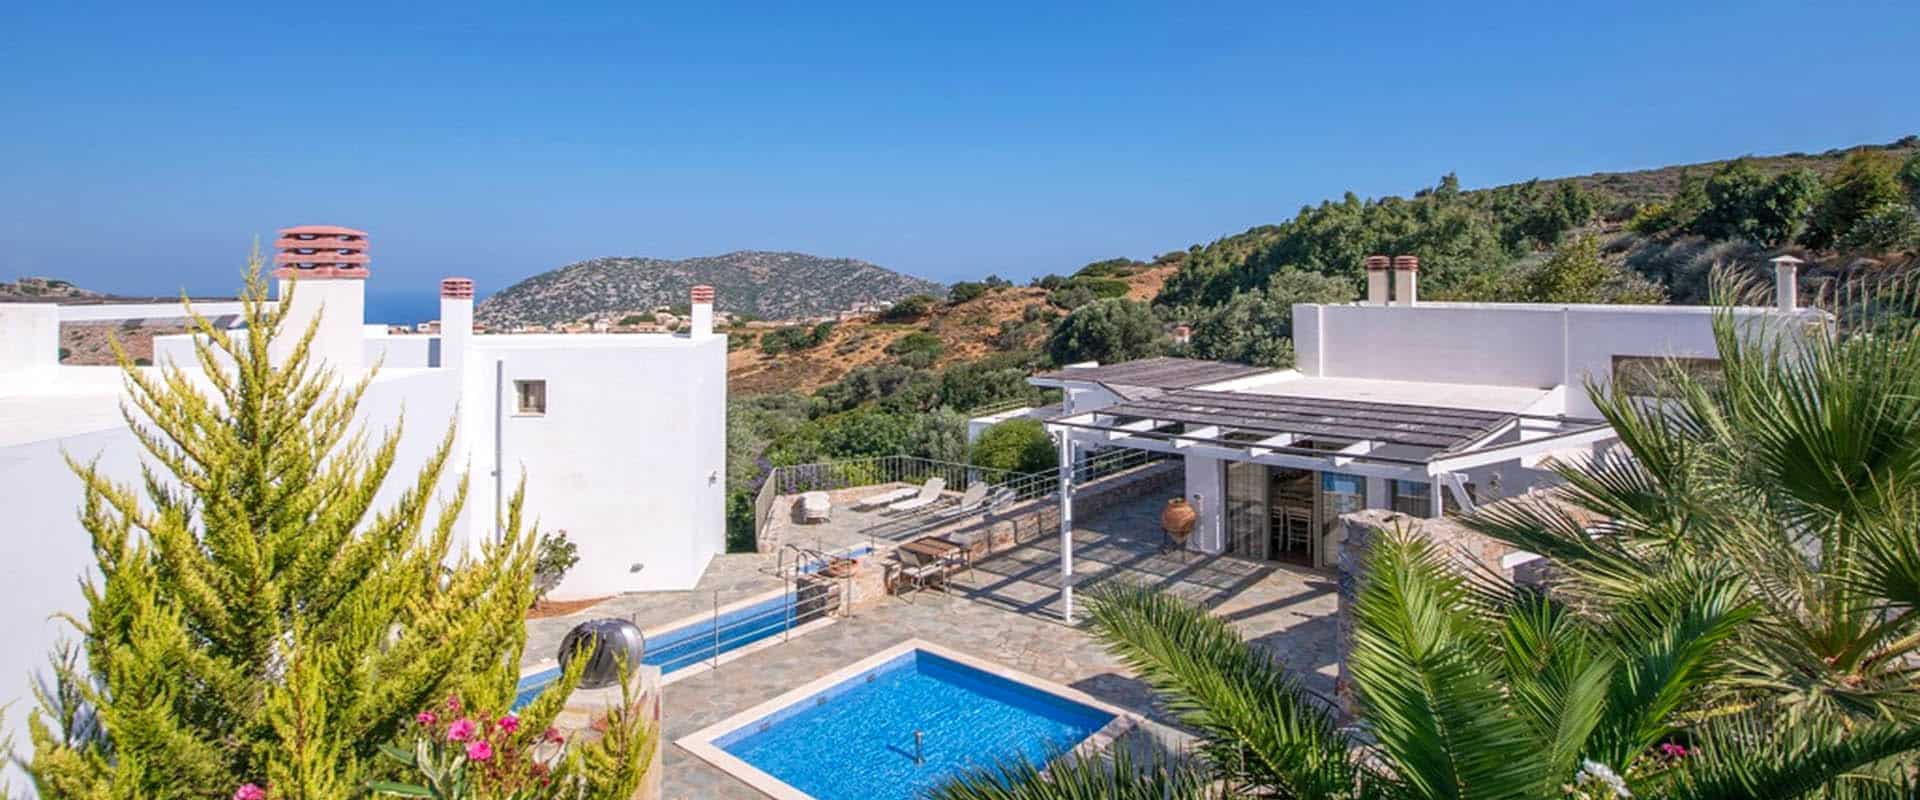 οικοτουρισμός ξενοδοχείο διακοπών βιώσιμος τουρισμός Κρήτη Ελλάδα